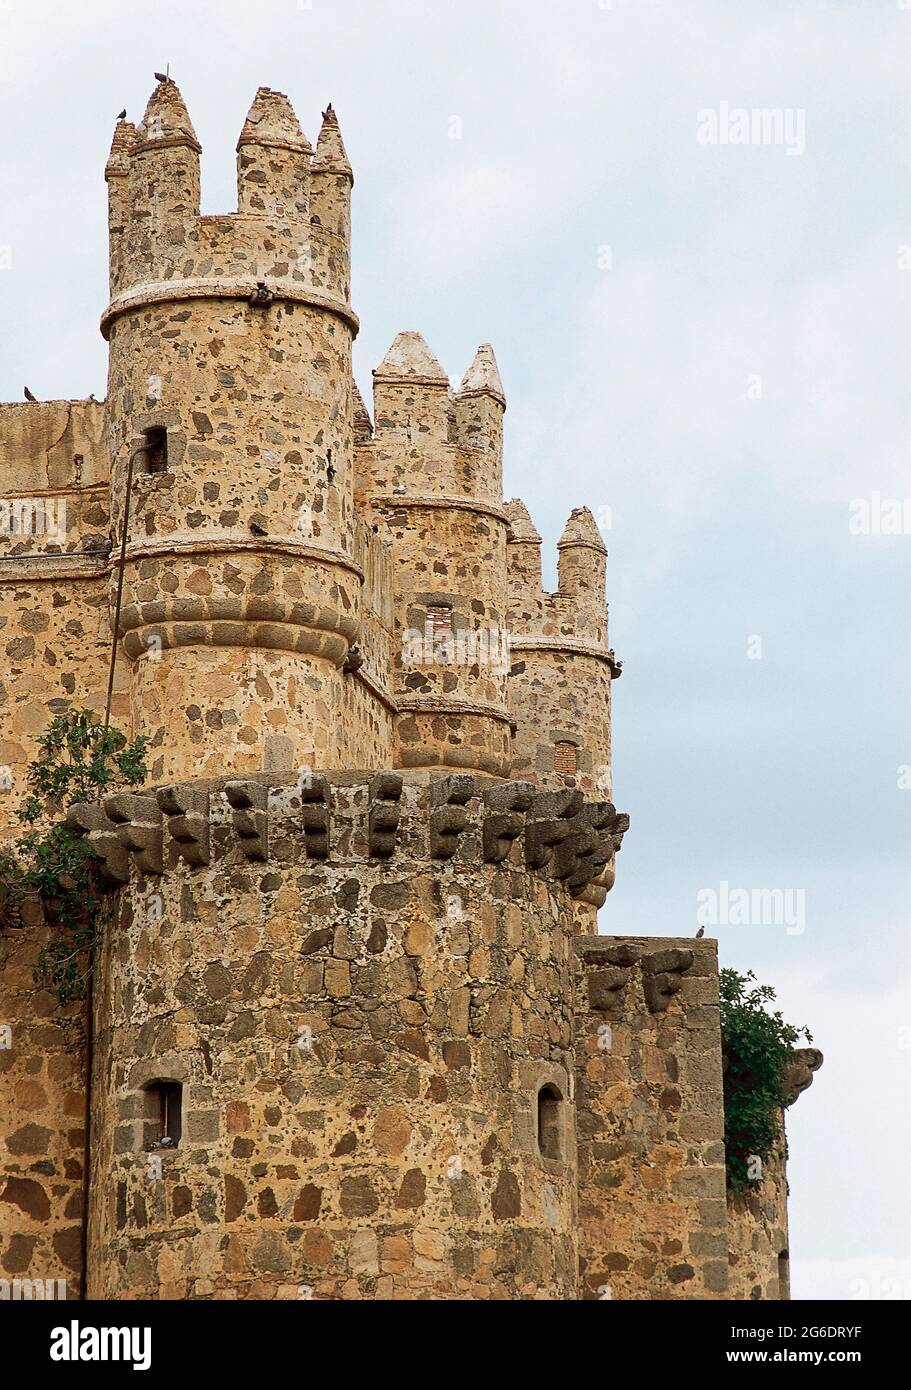 Spagna, Castiglia-la Mancha, provincia di Toledo. Castello di Guadamur. Vista parziale della fortezza, costruita nel 15 ° secolo su commissione di Pedro López de Ayala, il primo conte di Fuensalida. Foto Stock